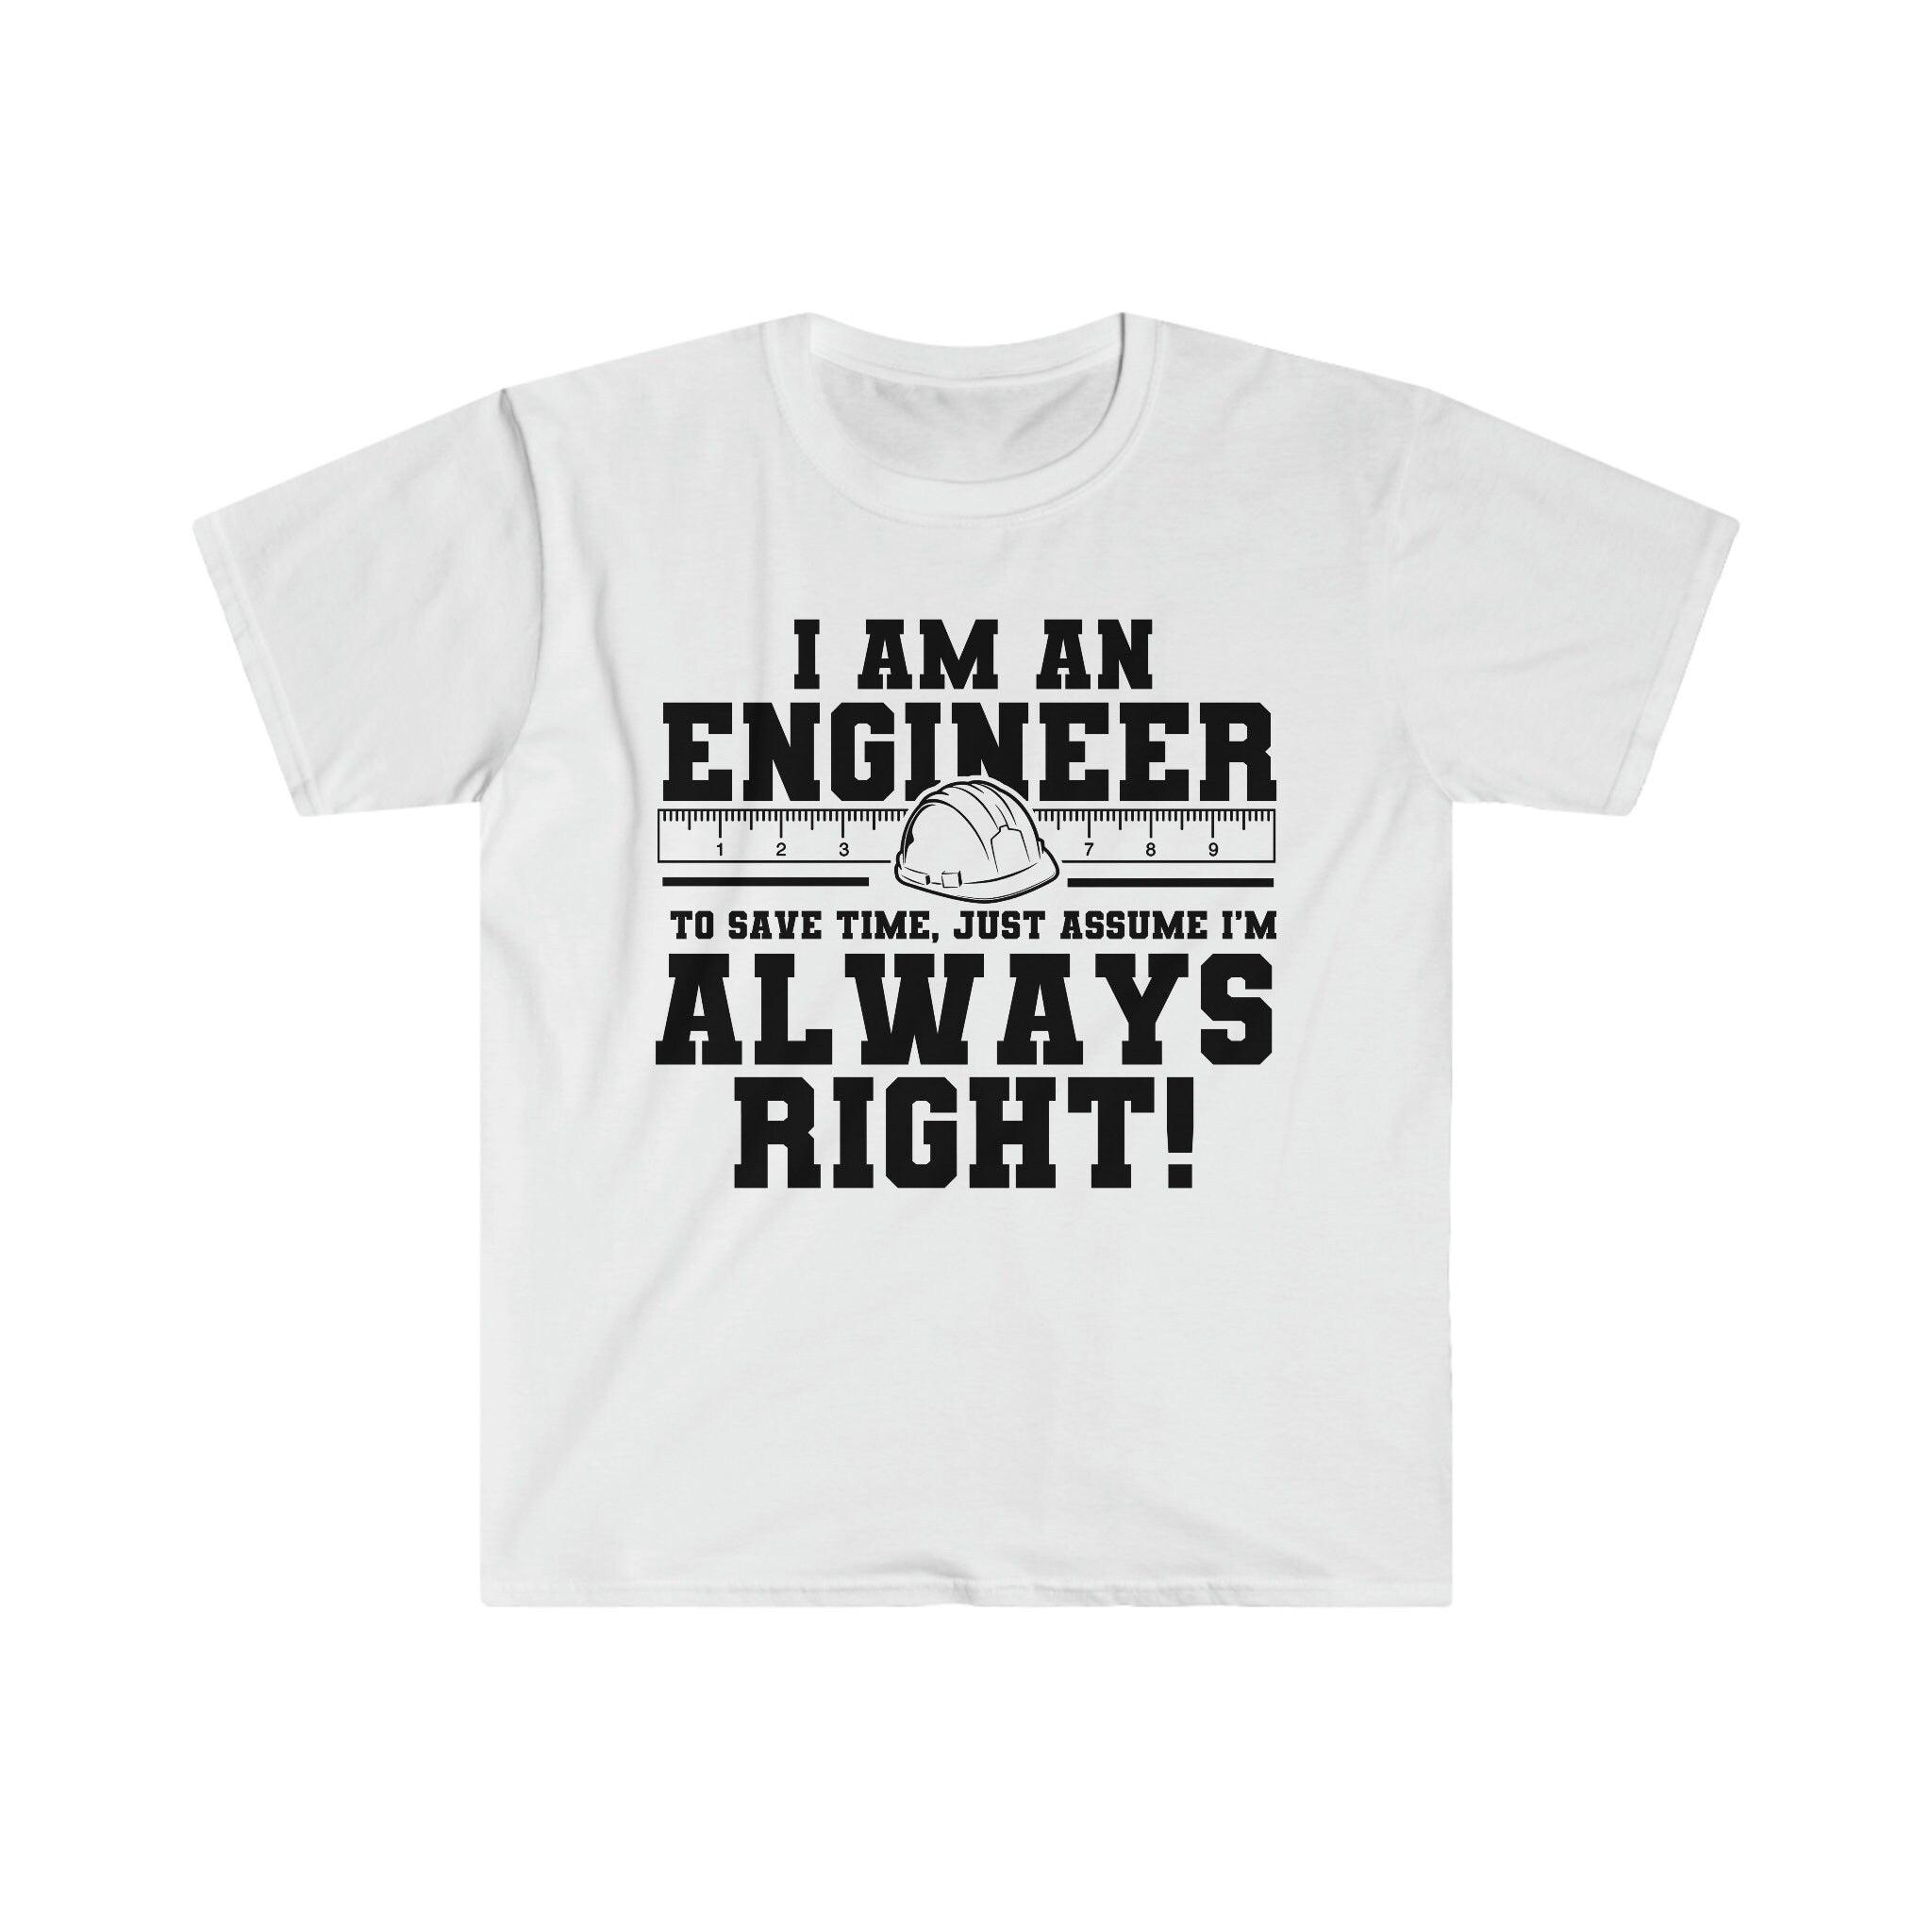 I Am An Engineer Басылған хат 2022 жазы ерлер футболкалары Қысқа жеңді мақта футболка, Инженерлер үшін сыйлық, Инженерлер әрқашан дұрыс футболкалар, футболкалар - plusminusco.com